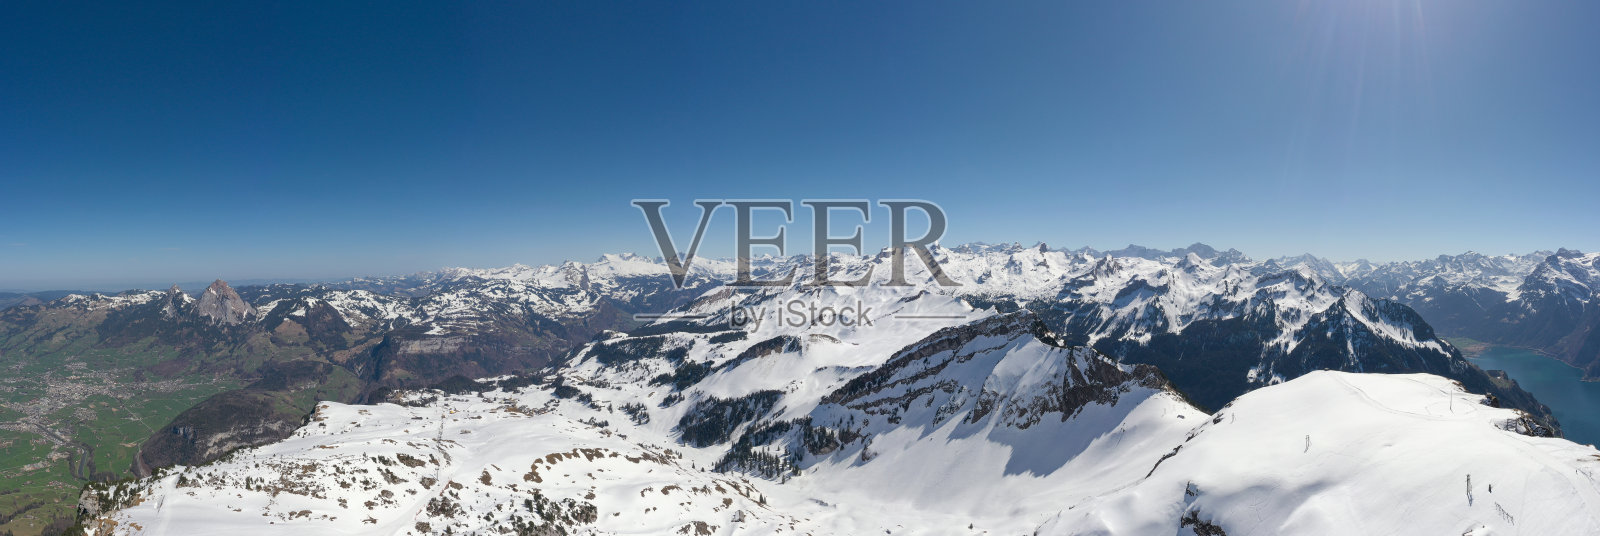 全景,鸟瞰图。阿尔卑斯山施维茨州和乌里州的山脊。瑞士中部。Big Mythen之巅，1 ' 898米。施维茨镇和卢塞恩湖。照片摄影图片